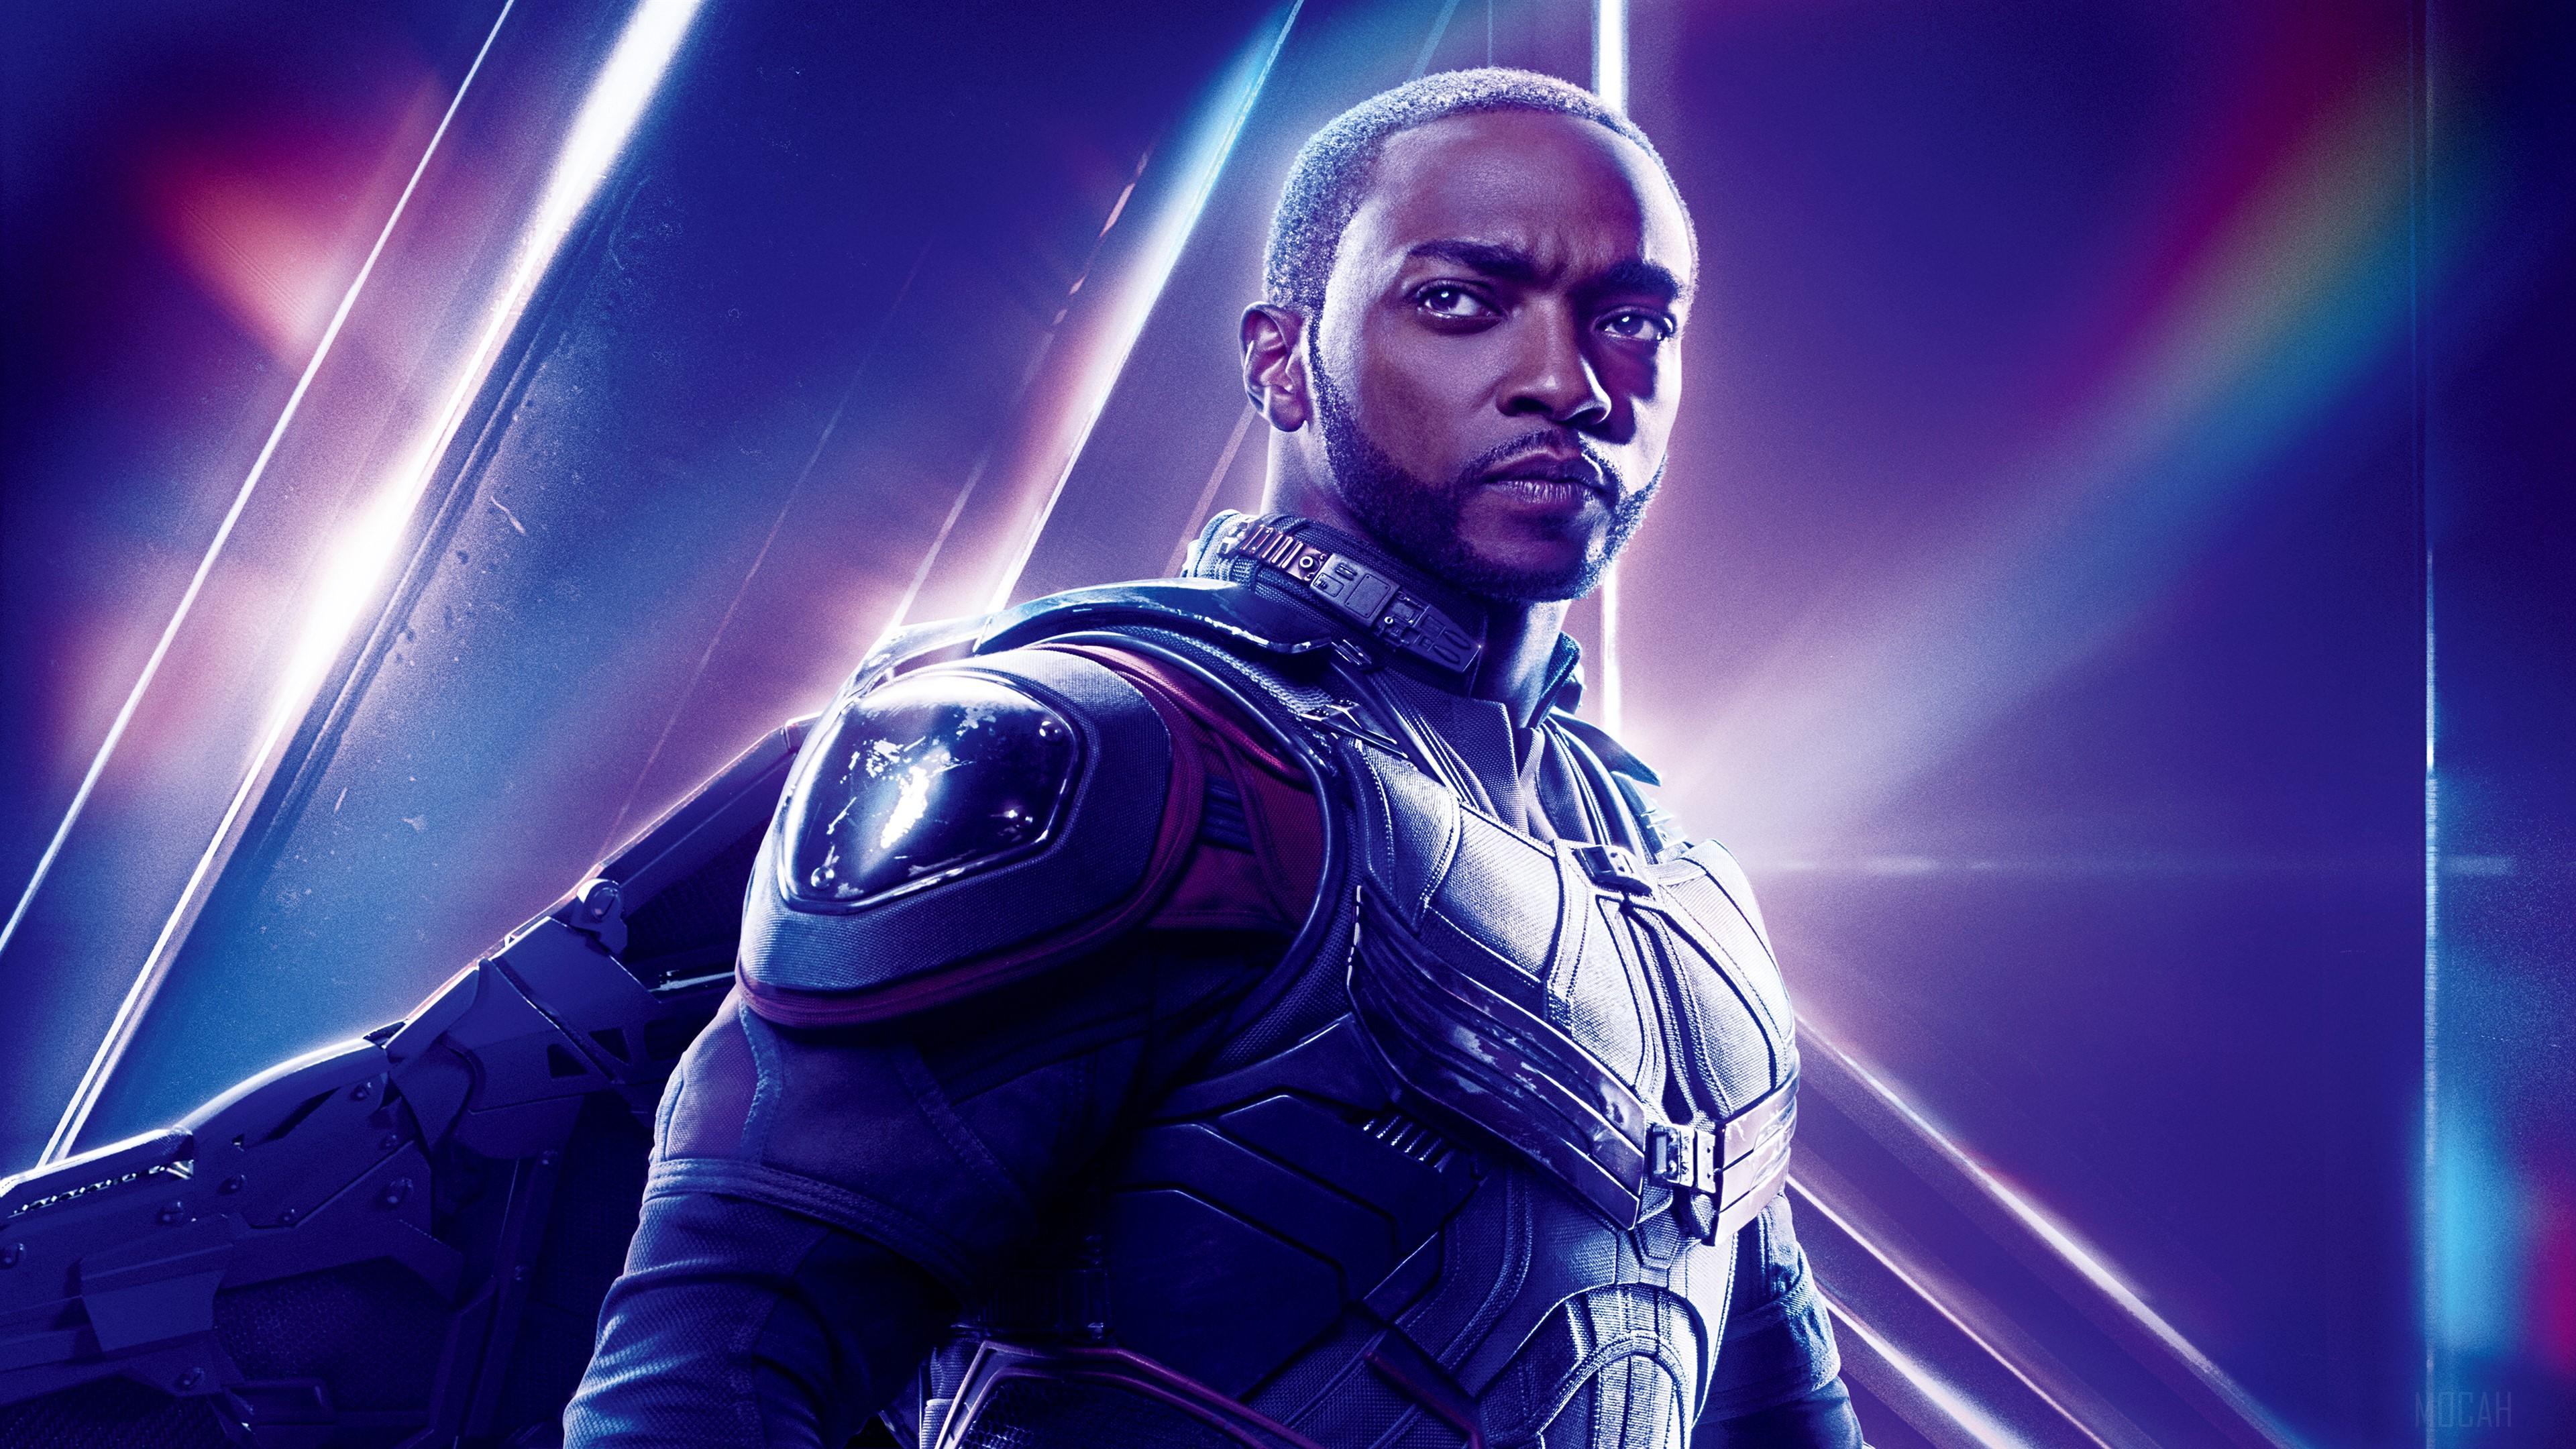 HD wallpaper, Anthony Mackie As Falcon In Avengers Infinity War 4K